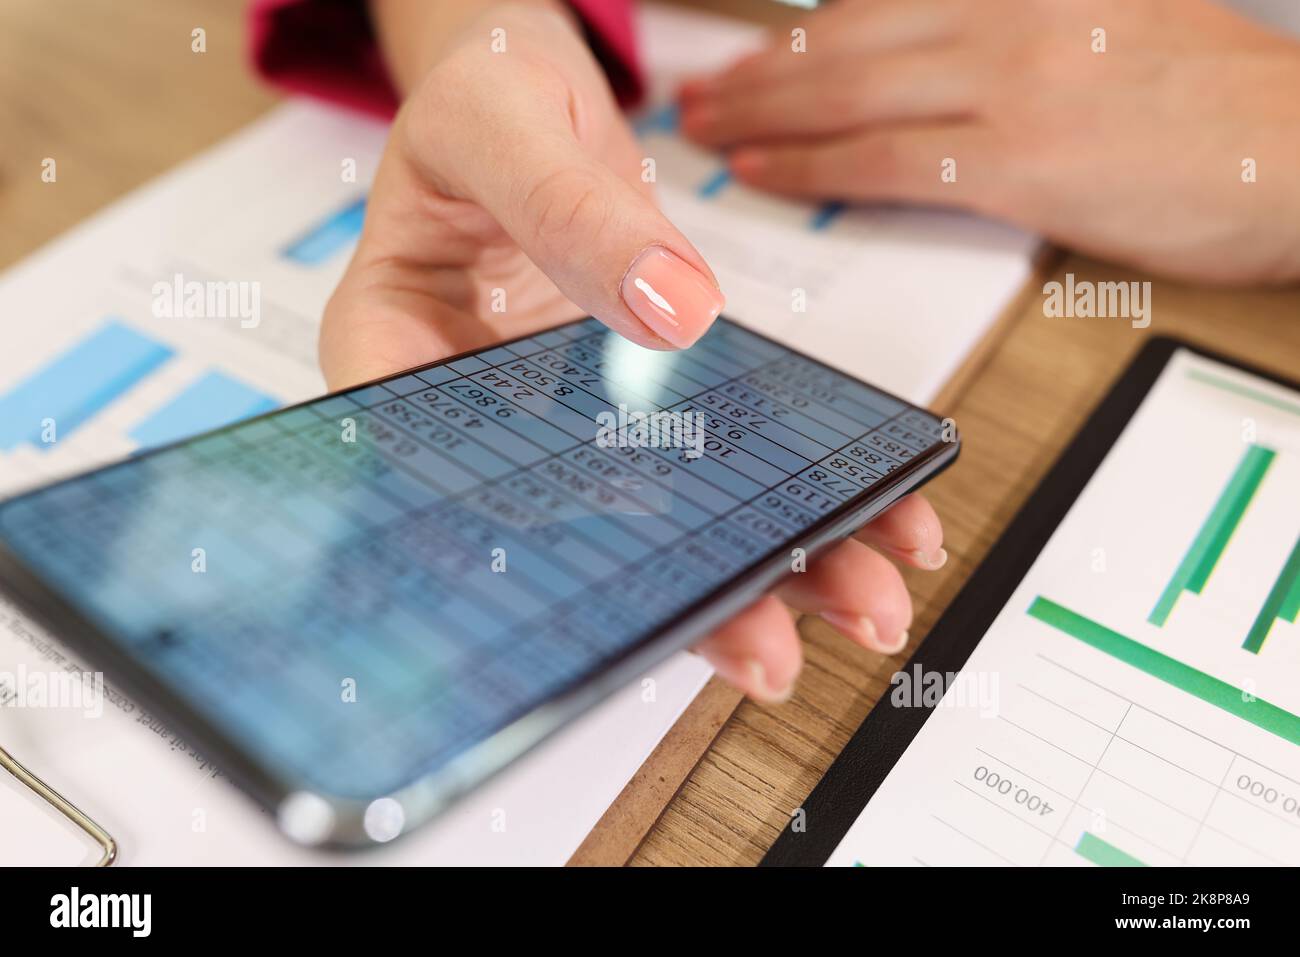 Le mani femminili tengono in mano uno smartphone moderno con dati statistici sullo schermo Foto Stock